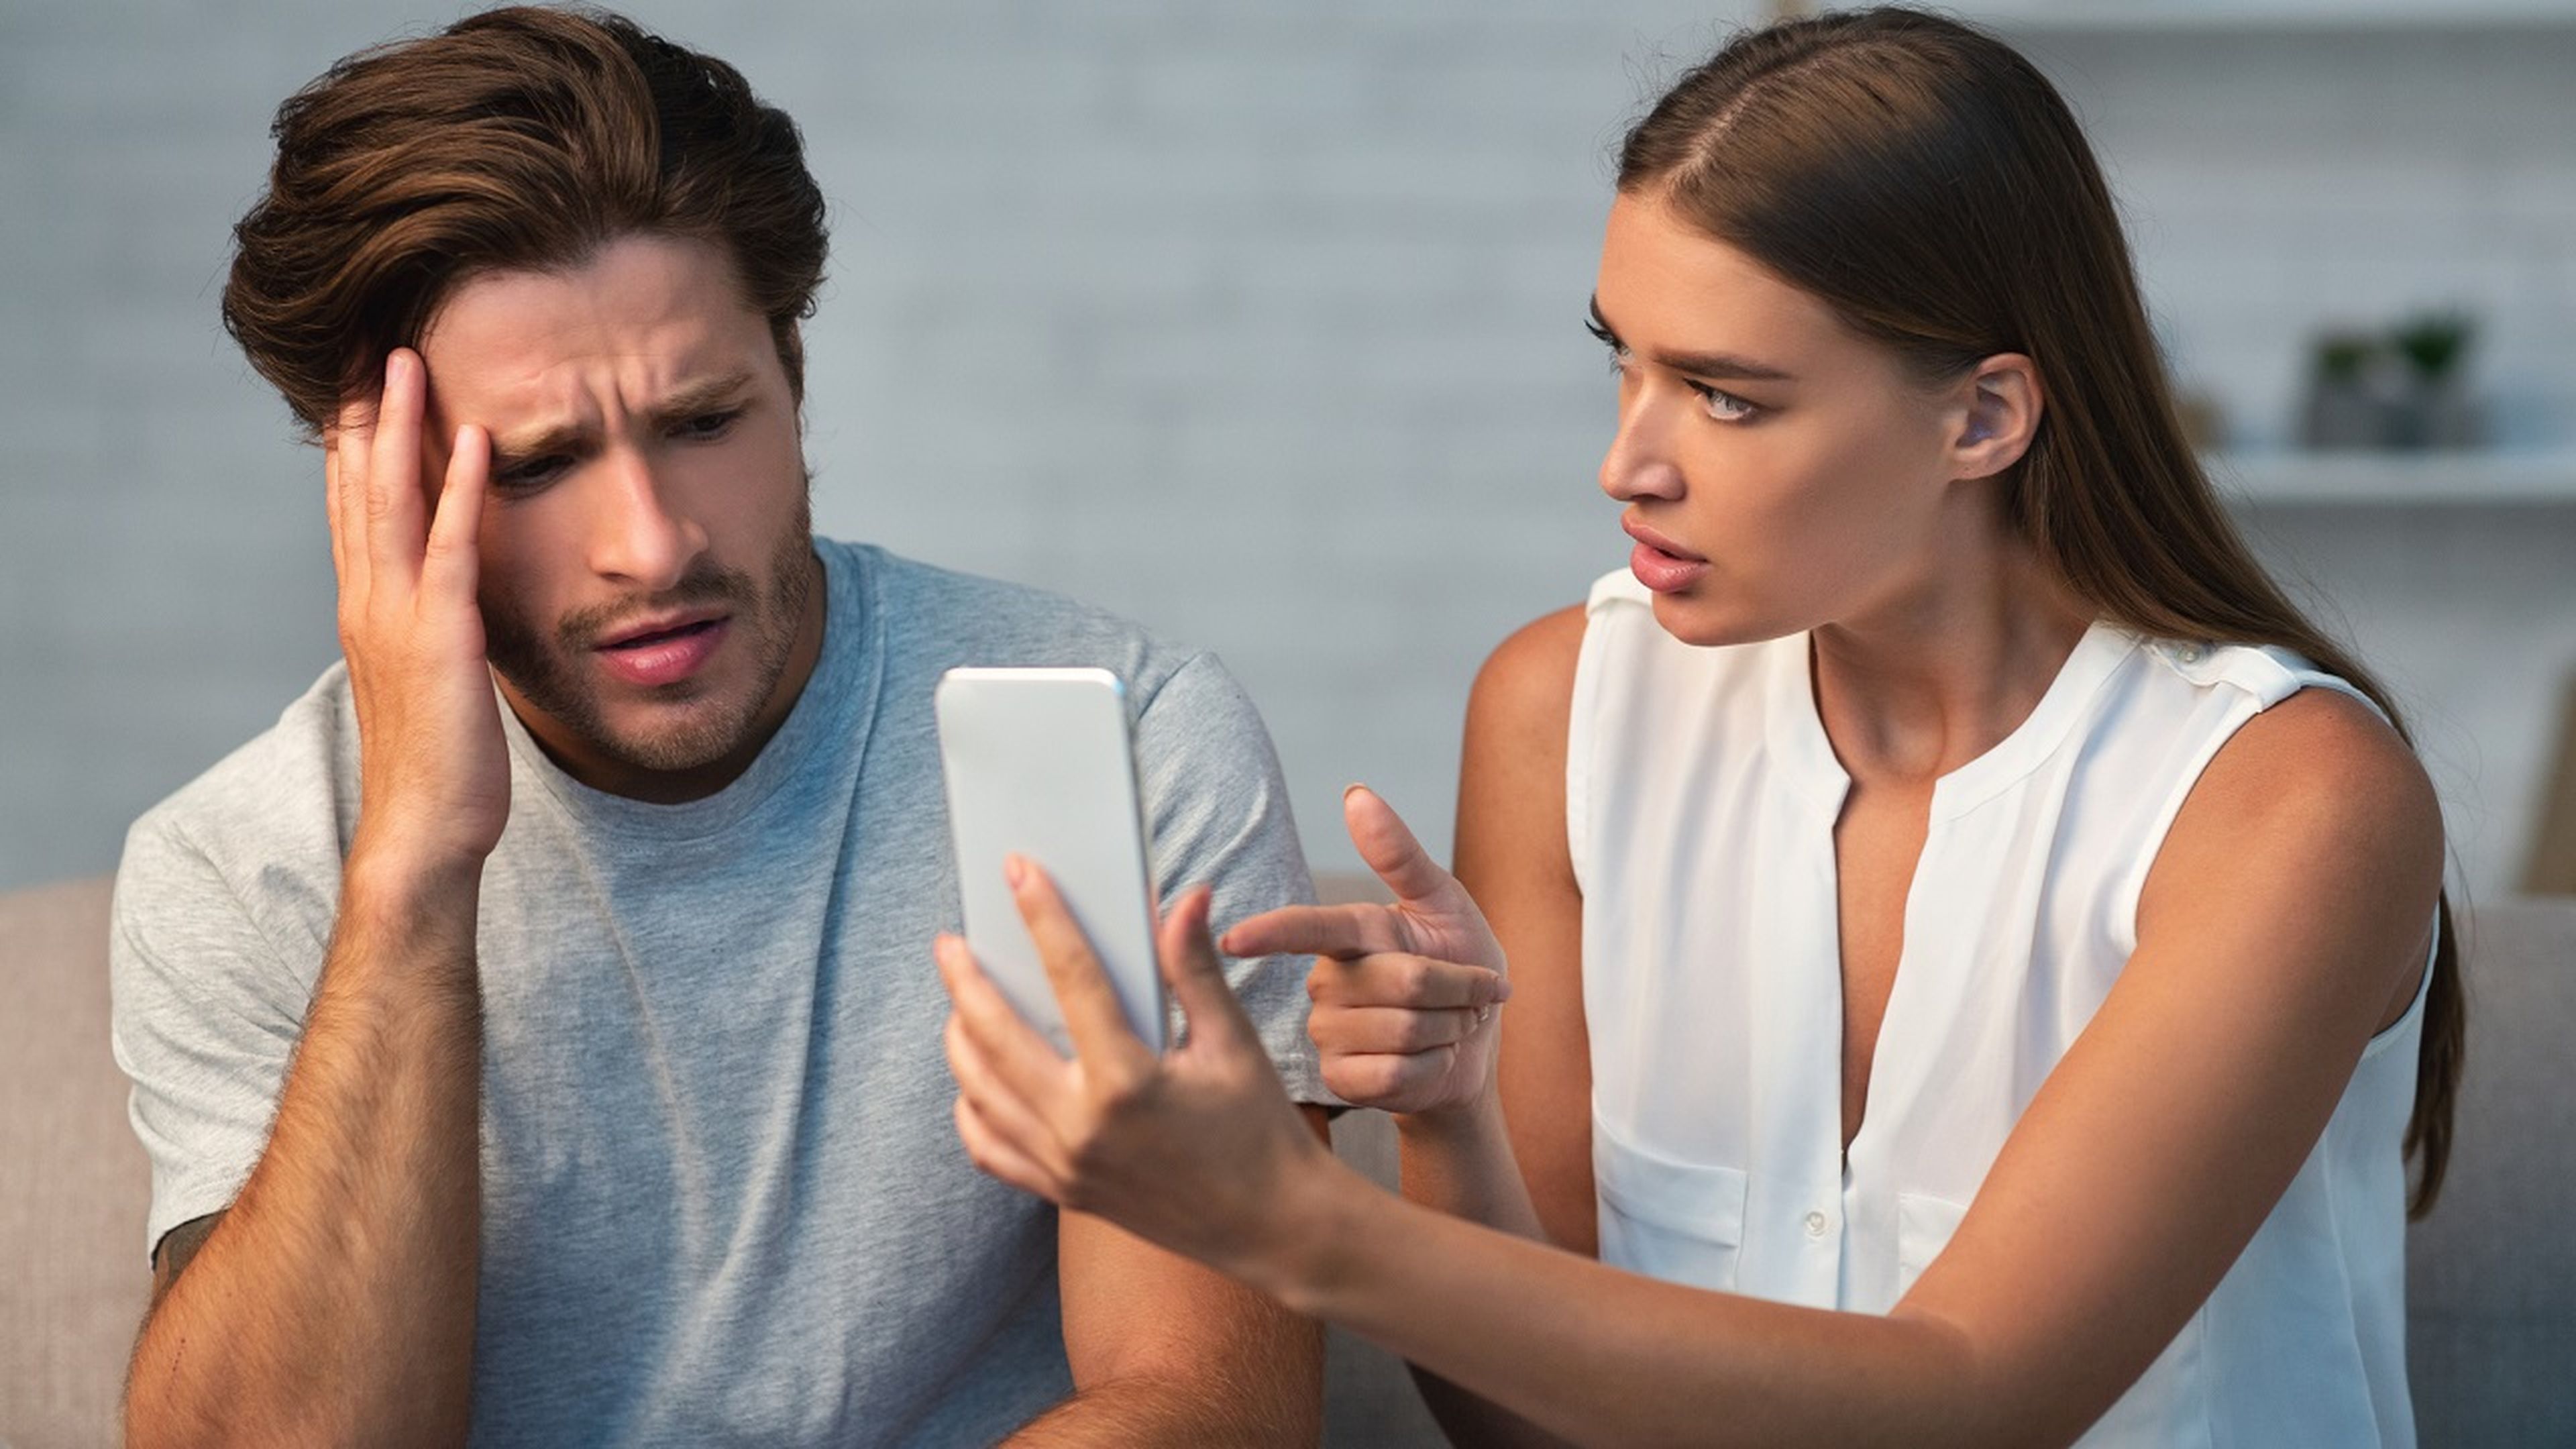 El truco de una tiktoker para saber si tu pareja es infiel: solo necesitas el Wifi